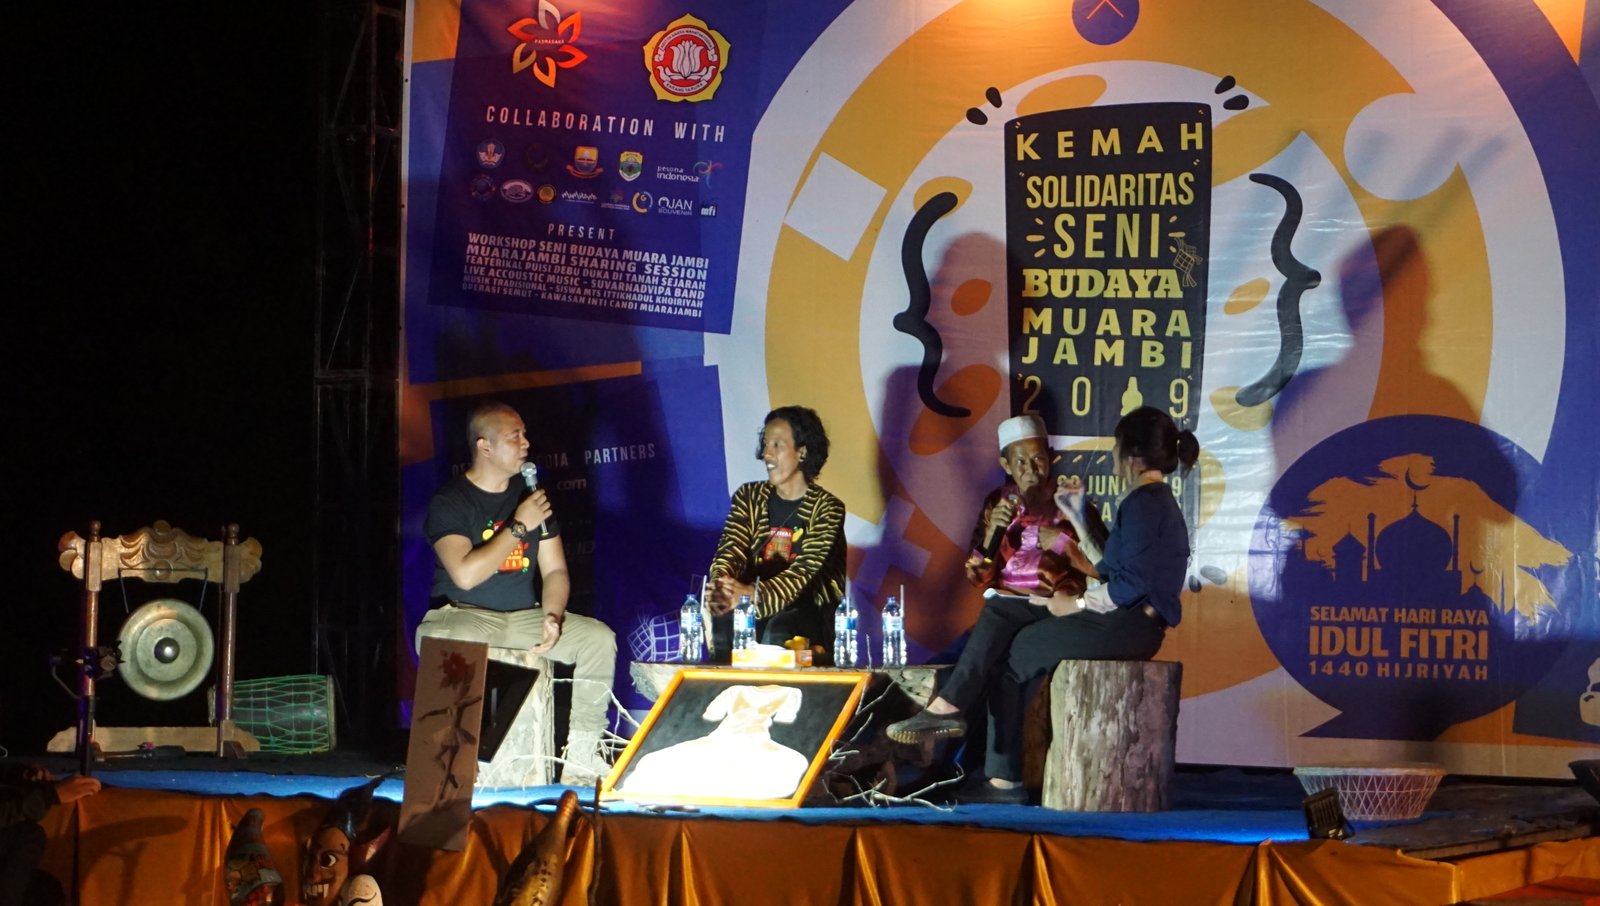 Kemah solidaritas seni budaya Candi Muara Jambi 2019